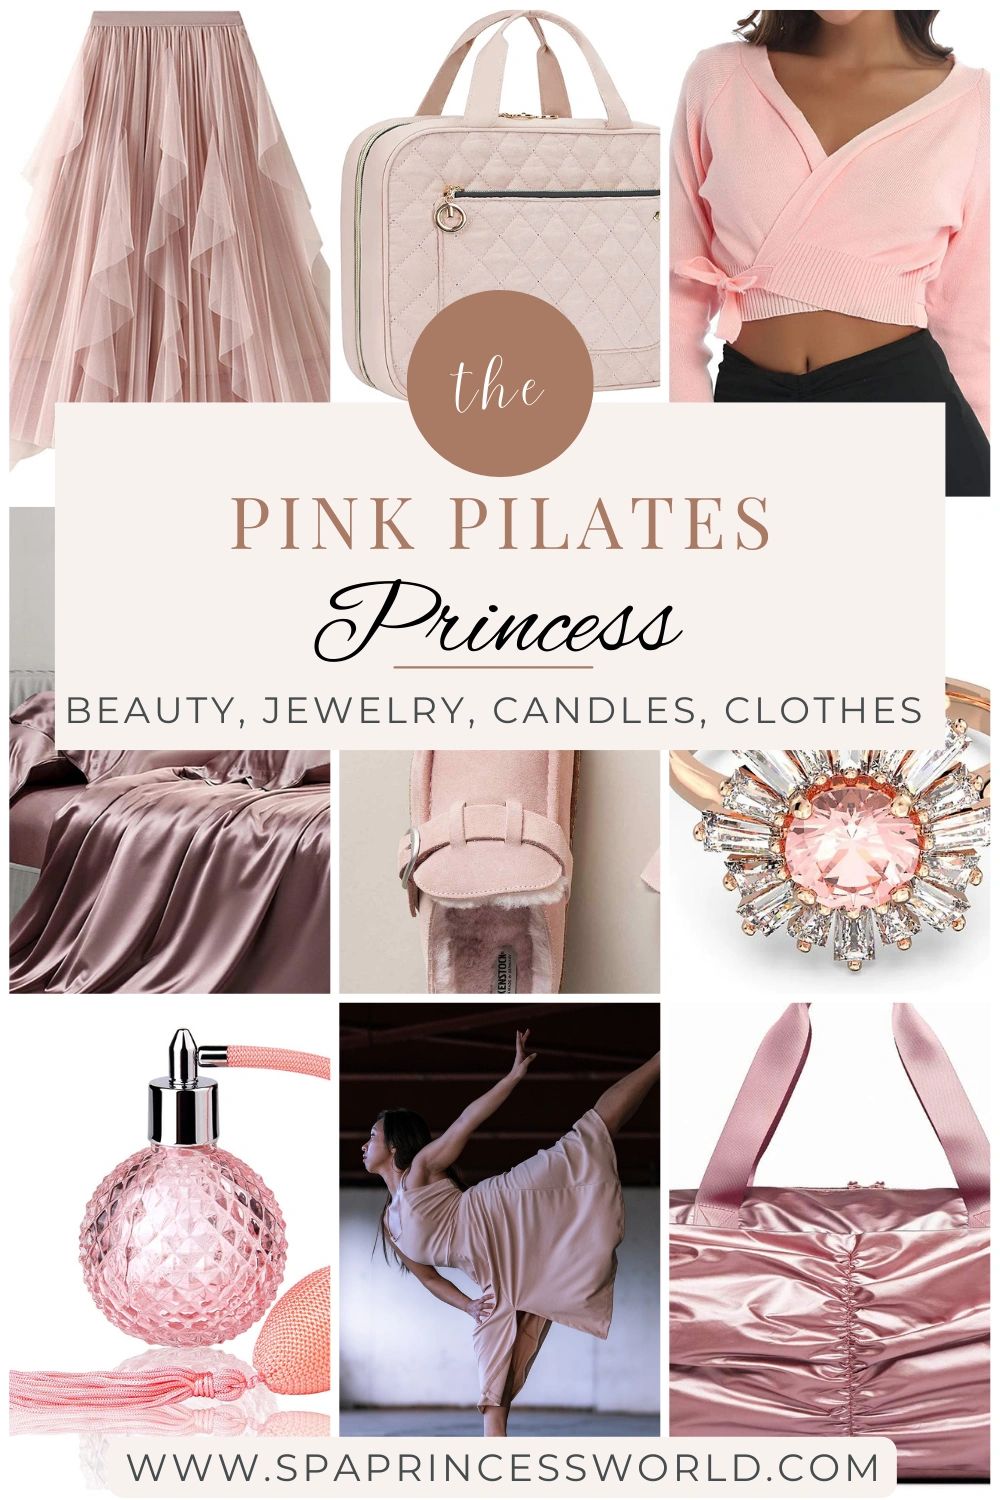 Pilates inspiration 💌 Pilates aesthetic, pink Pilates princess